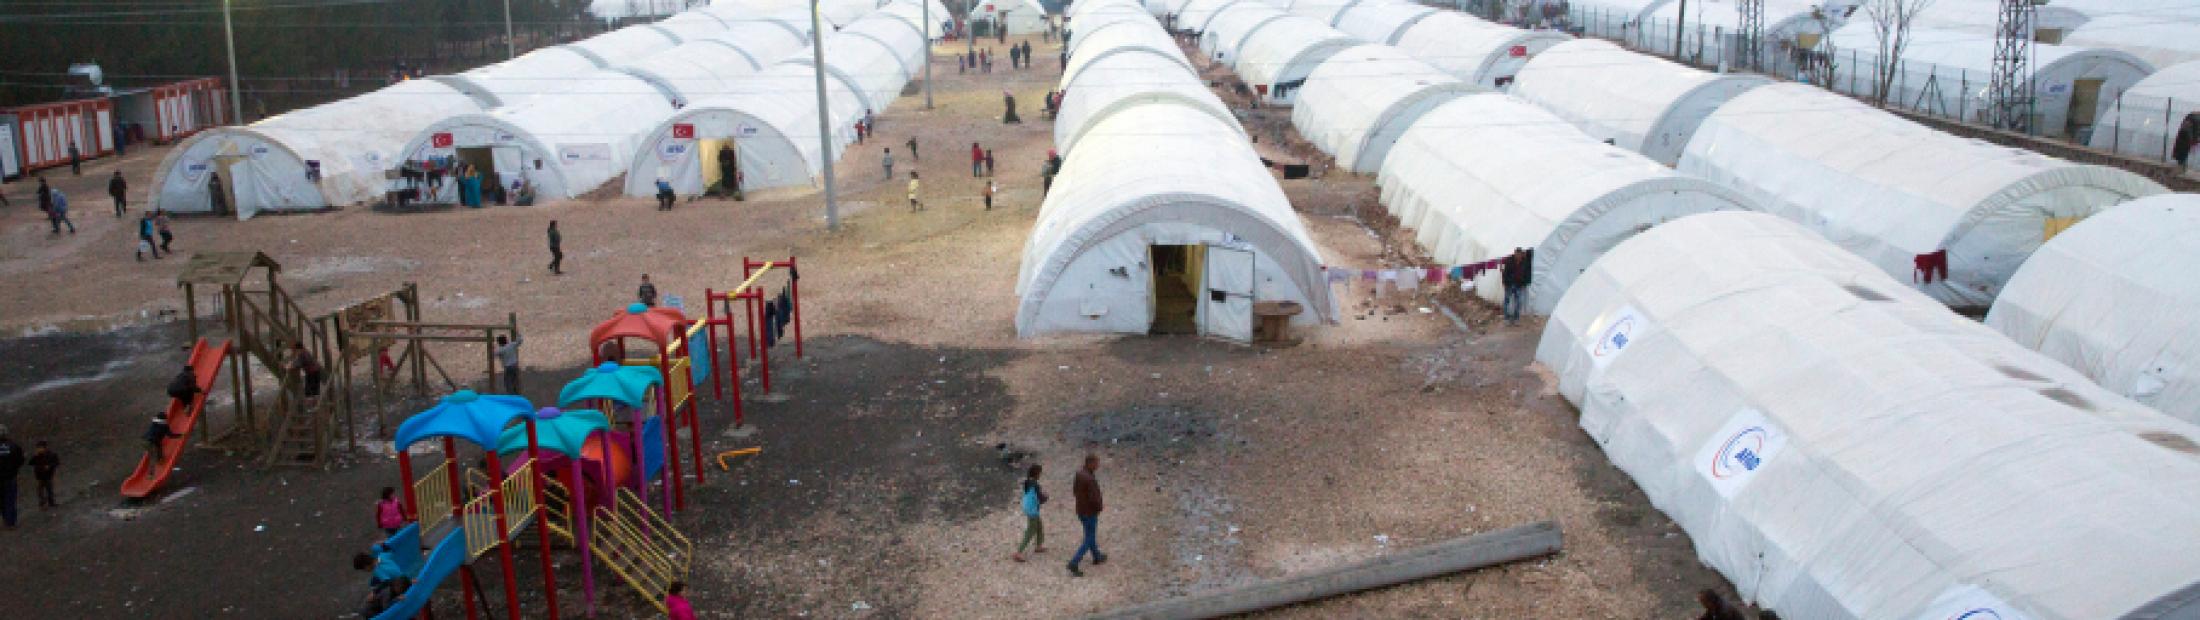 ¿Cuáles son las características de los campos de refugiados?